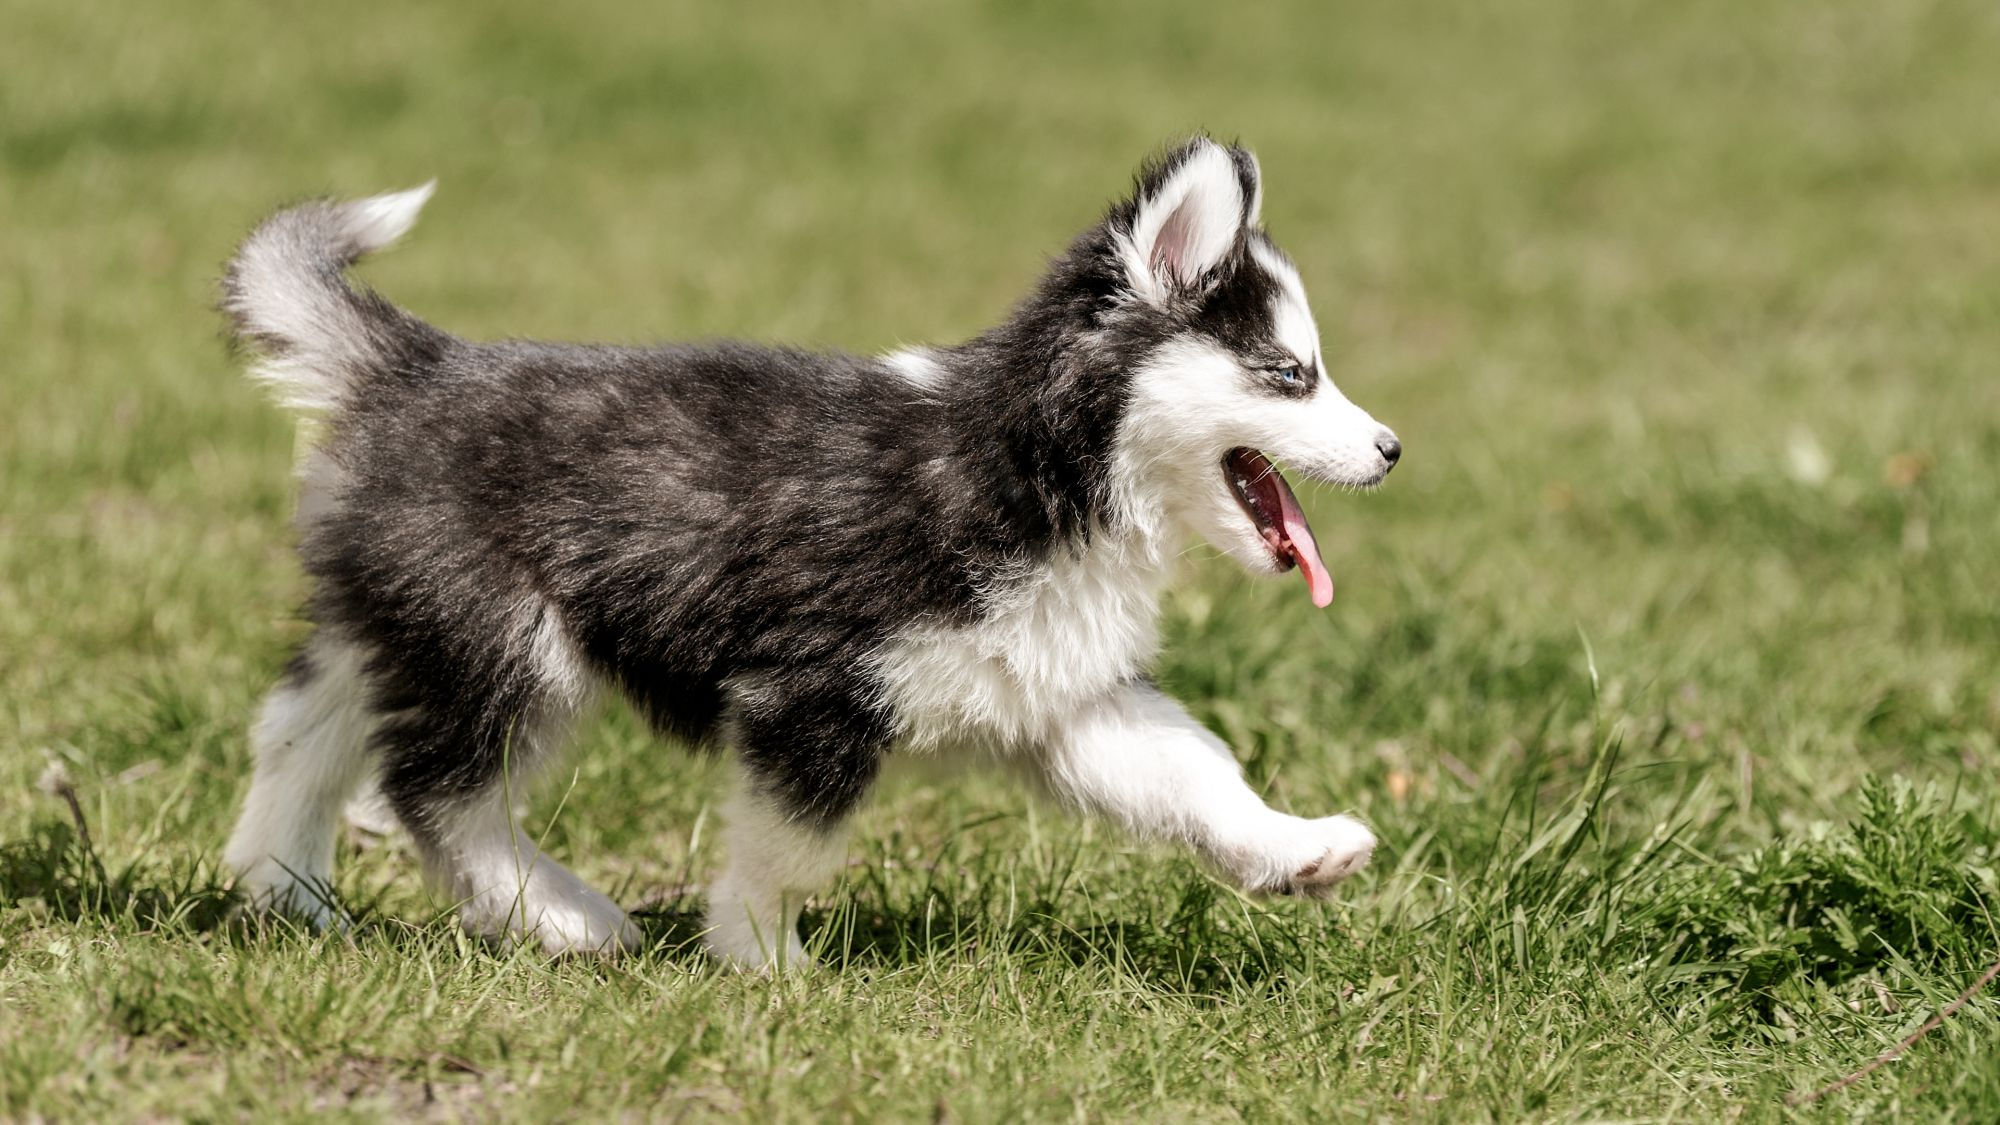 Husky puppy walking outdoors through grass